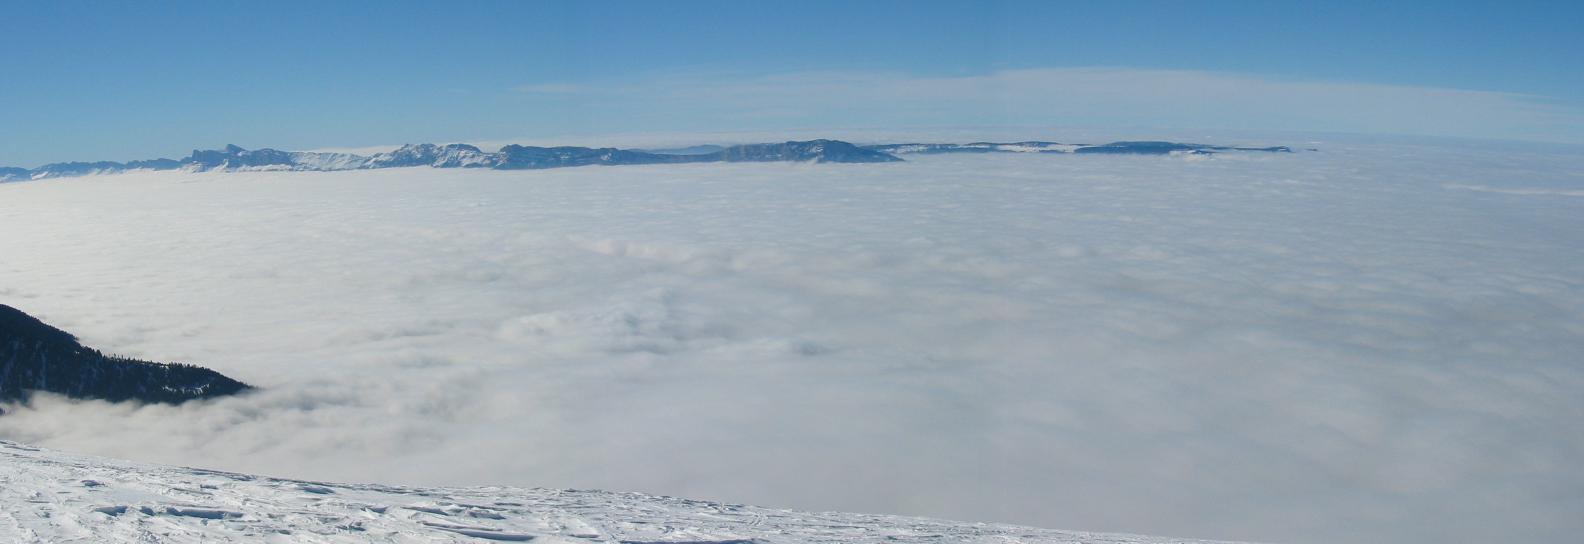 Mer de nuage : Vallée encombrée de nuages tenances jusqu'à 1500m d'altitude.